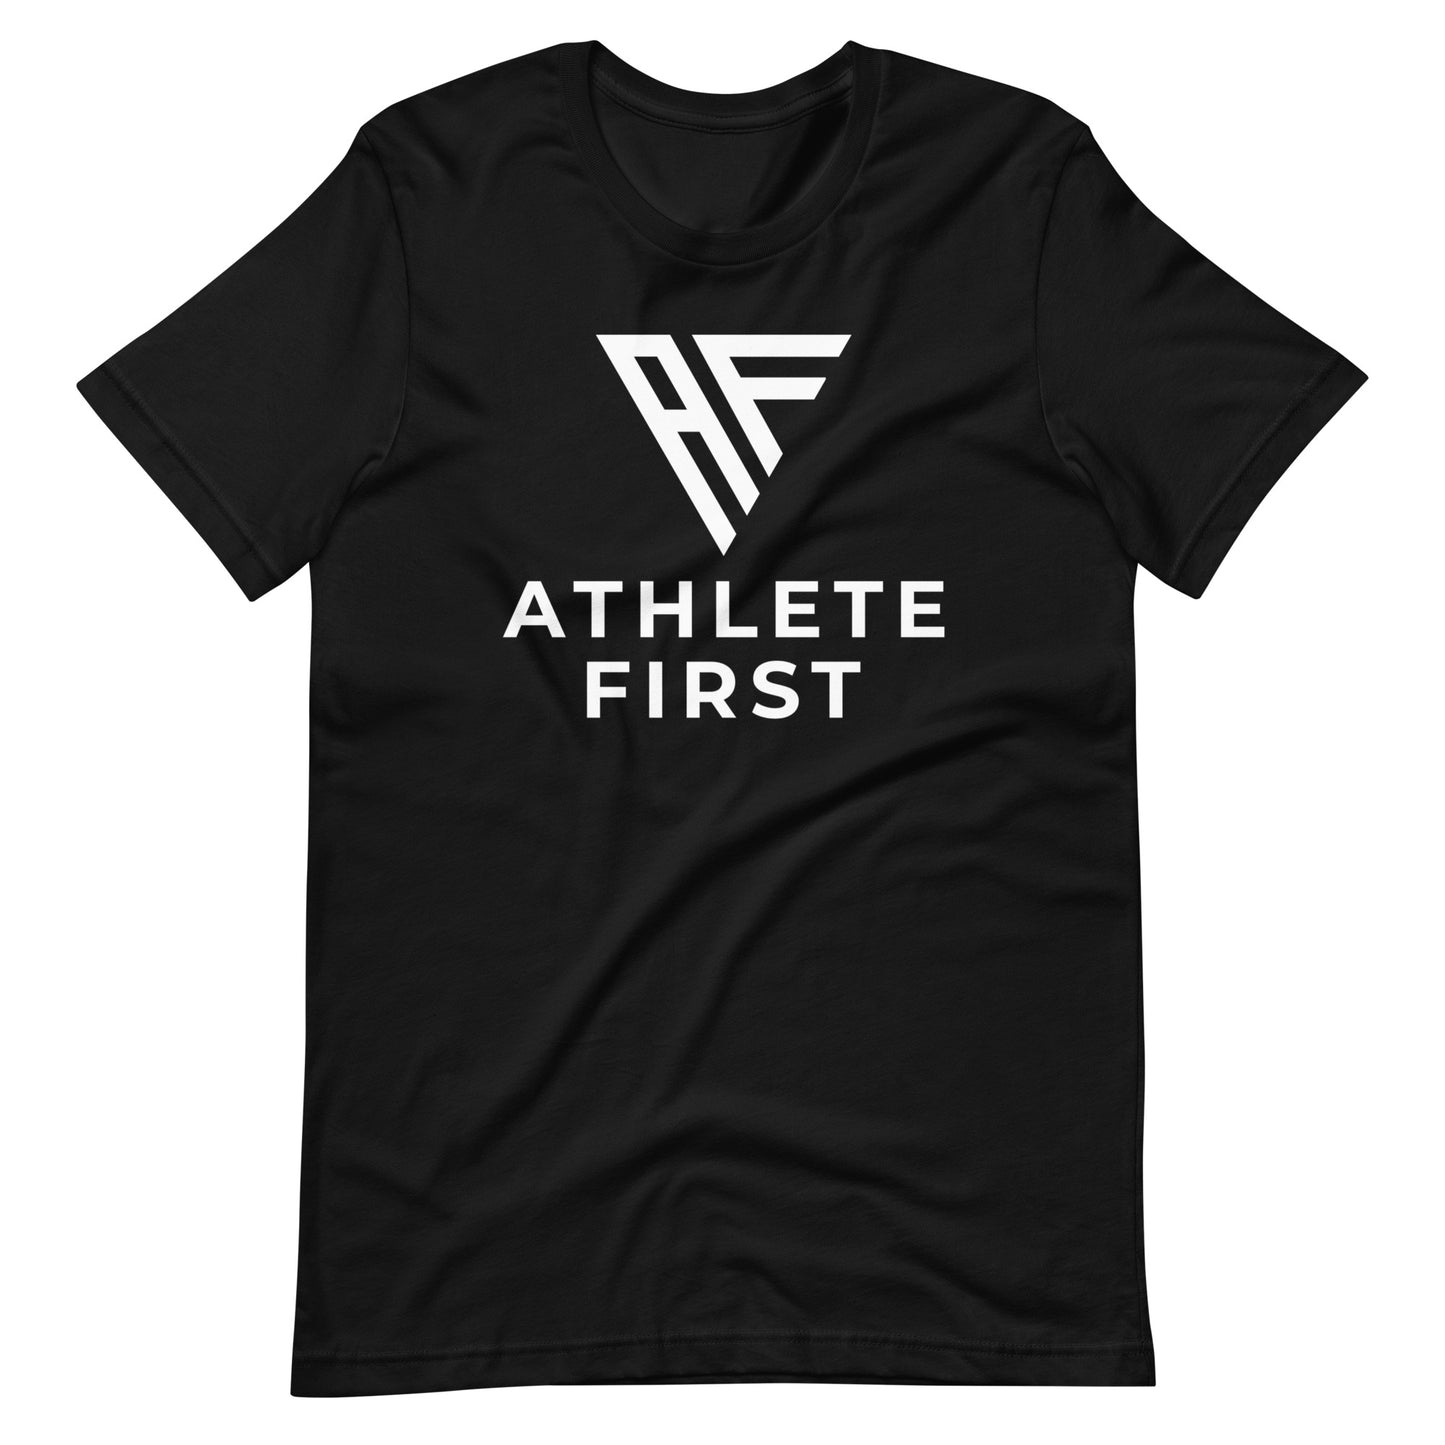 Athlete First: Standard Emblem Tee